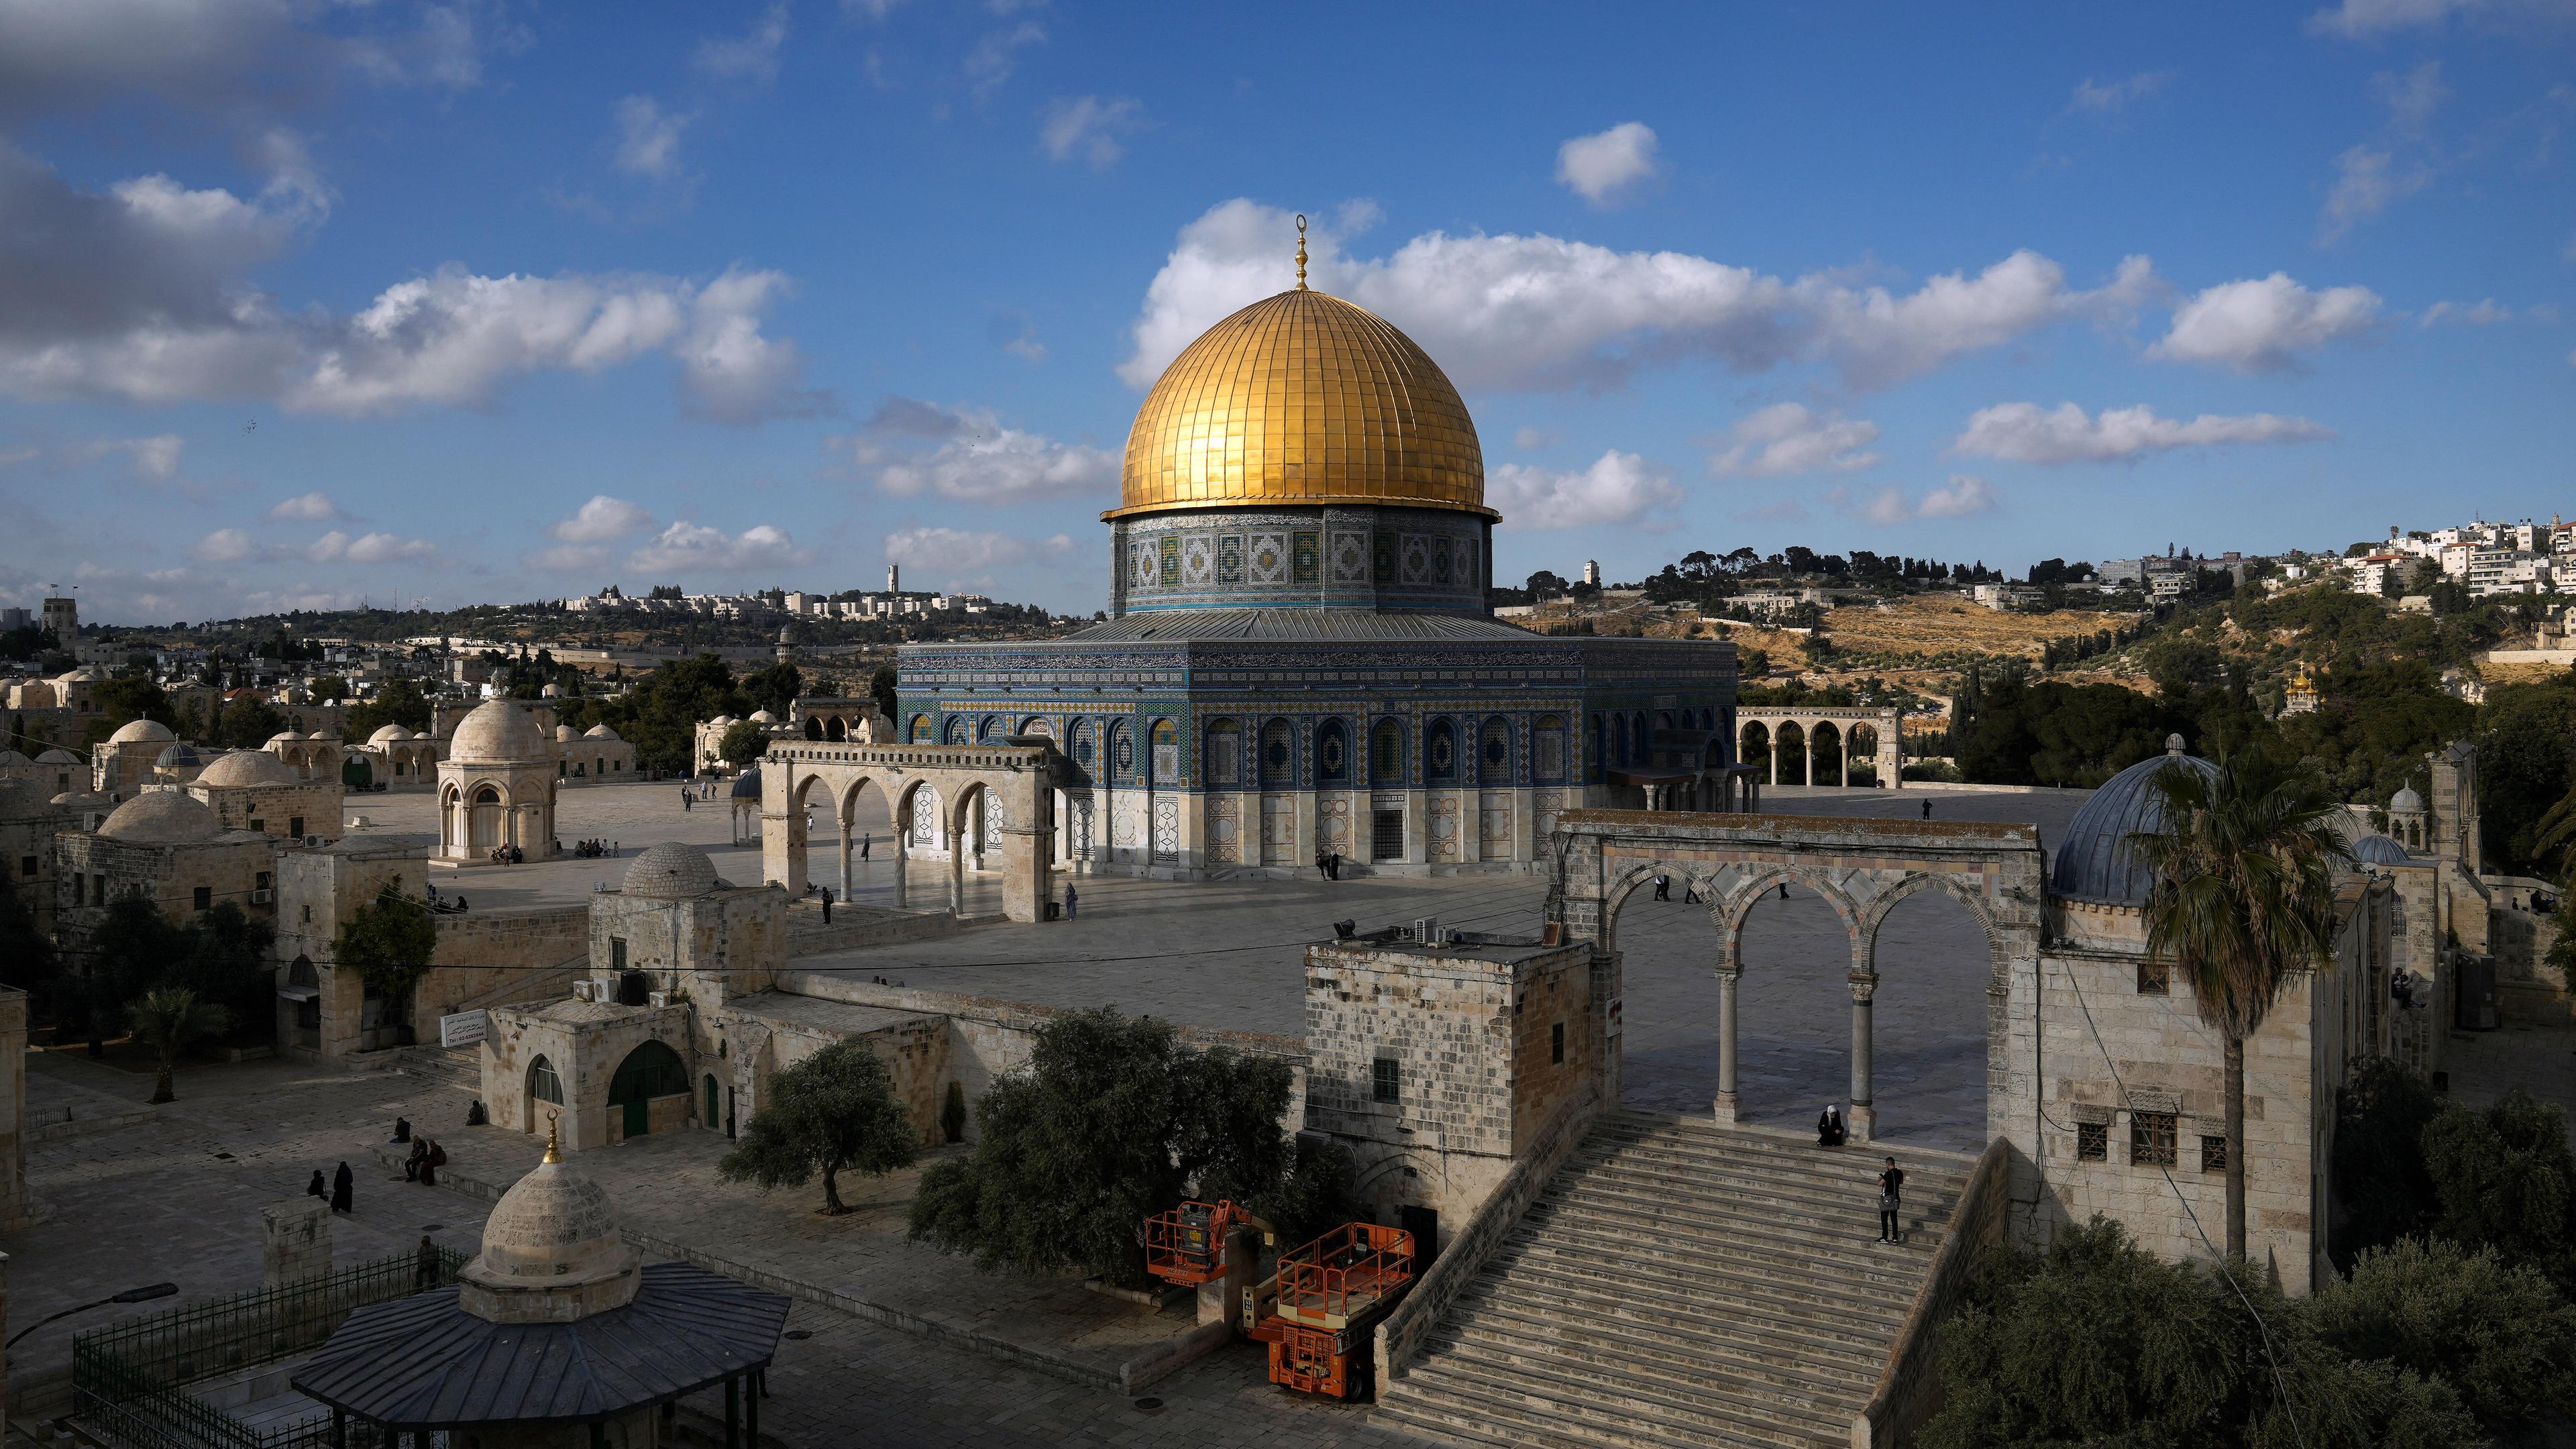 Felsendom auf dem Tempelberg in Jerusalem (Israel), aufgenommen am 21.06.2022